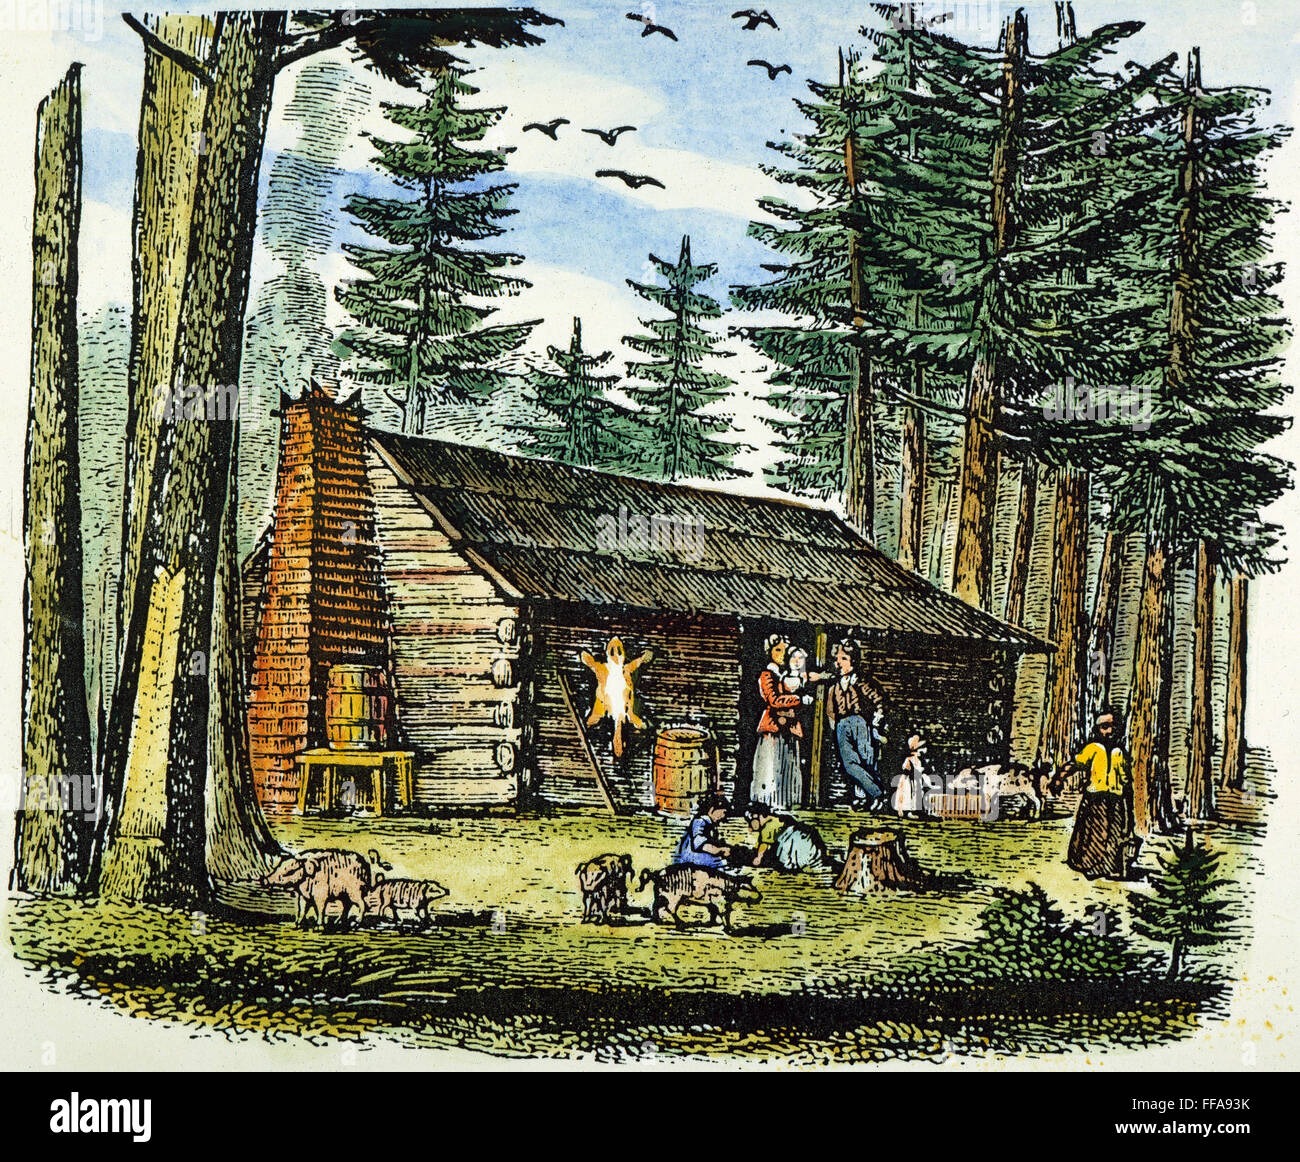 PIONEER HOMESTEAD, 19e C. /nA pioneer homestead dans une forêt de pins : gravure couleur, 19e siècle. Banque D'Images